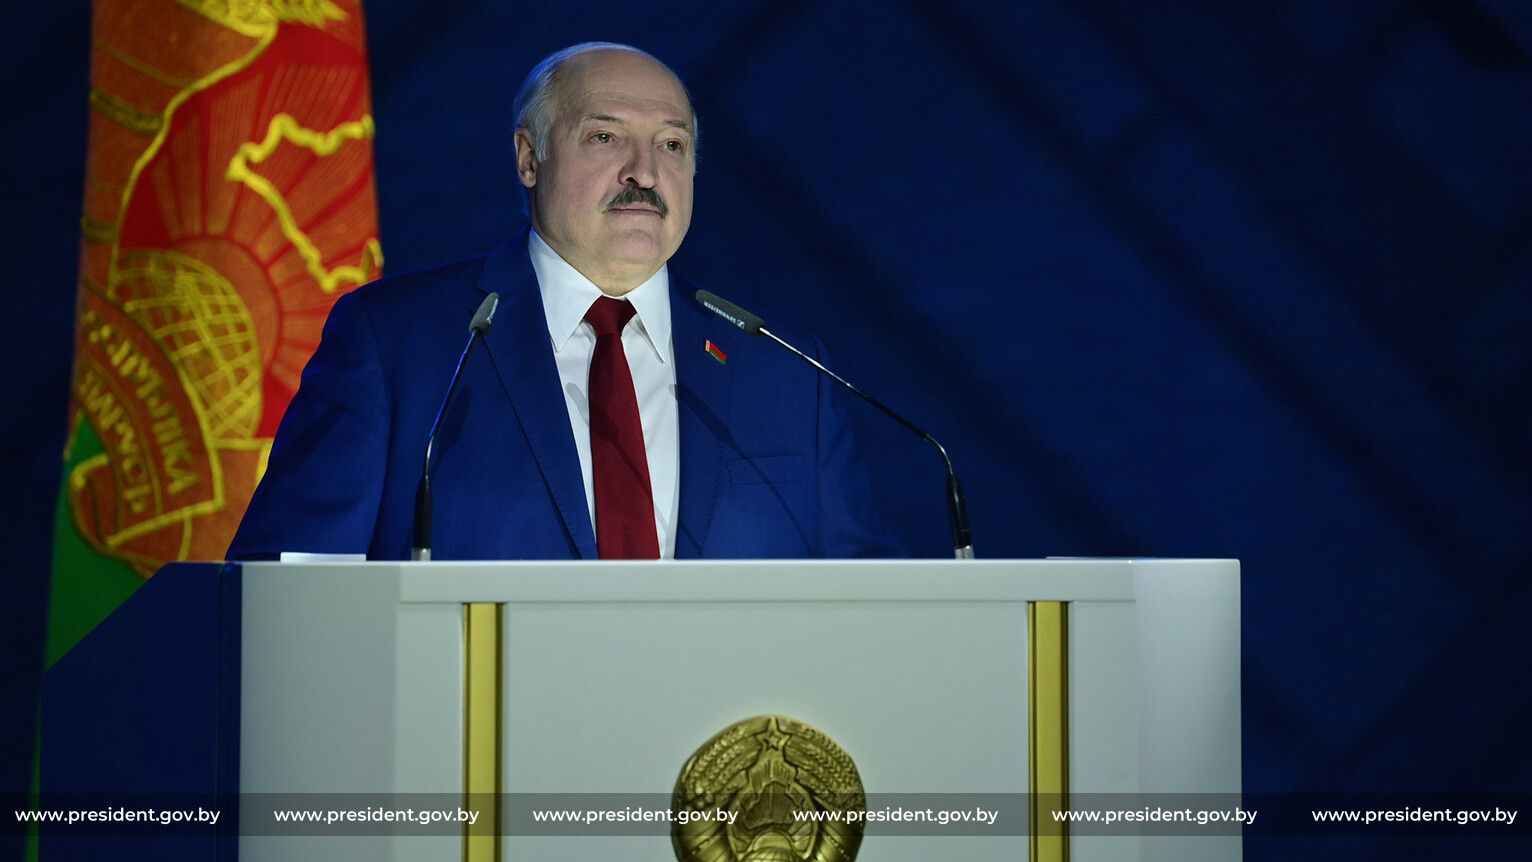 Лукашенко повідомив у якому випадку воюватимуть: якщо нападуть на них або на їхнього союзника — Росію